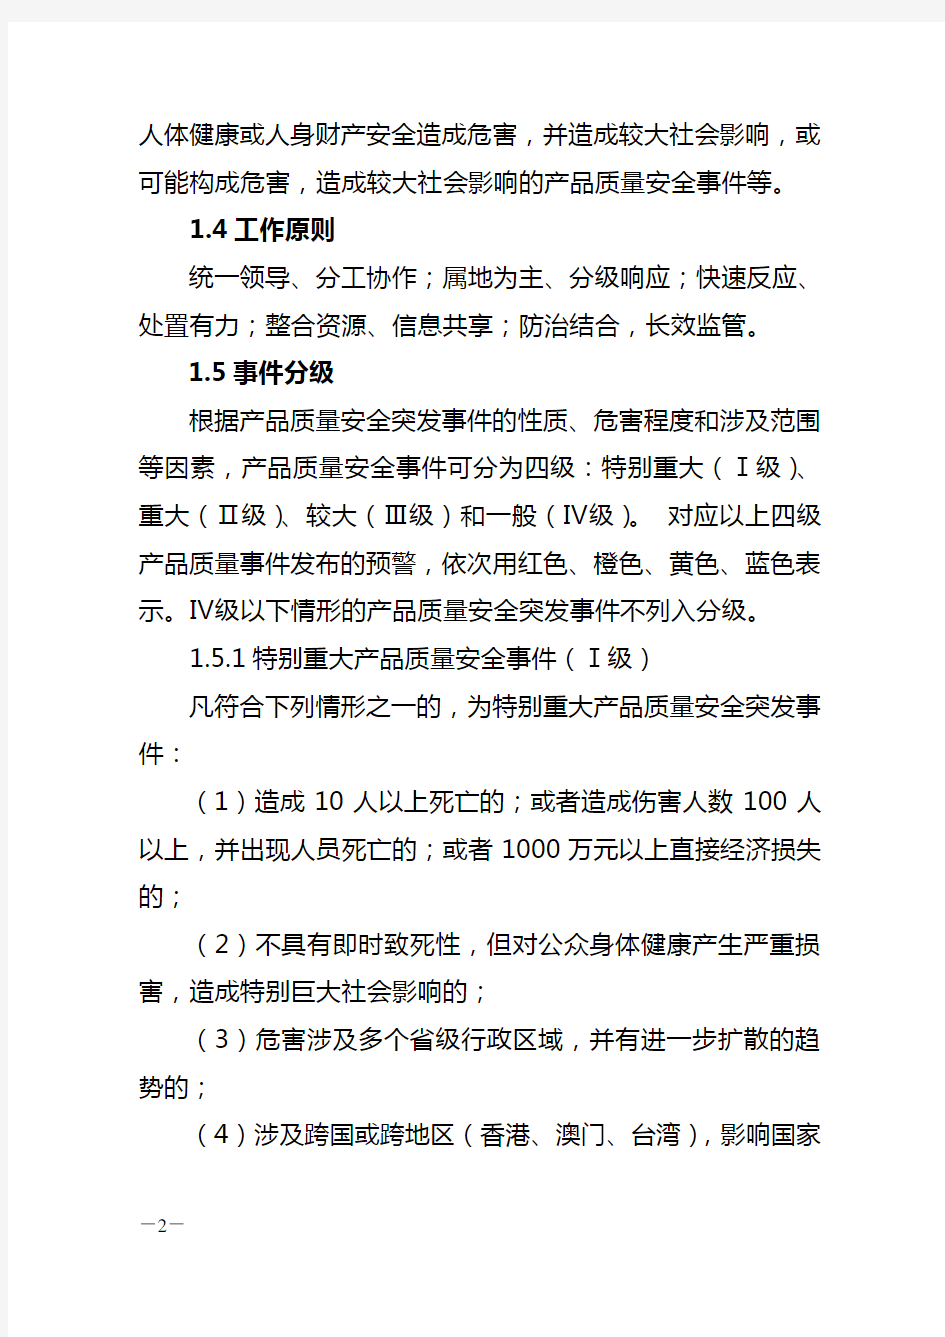 上海市突发公共事件总体应急预案